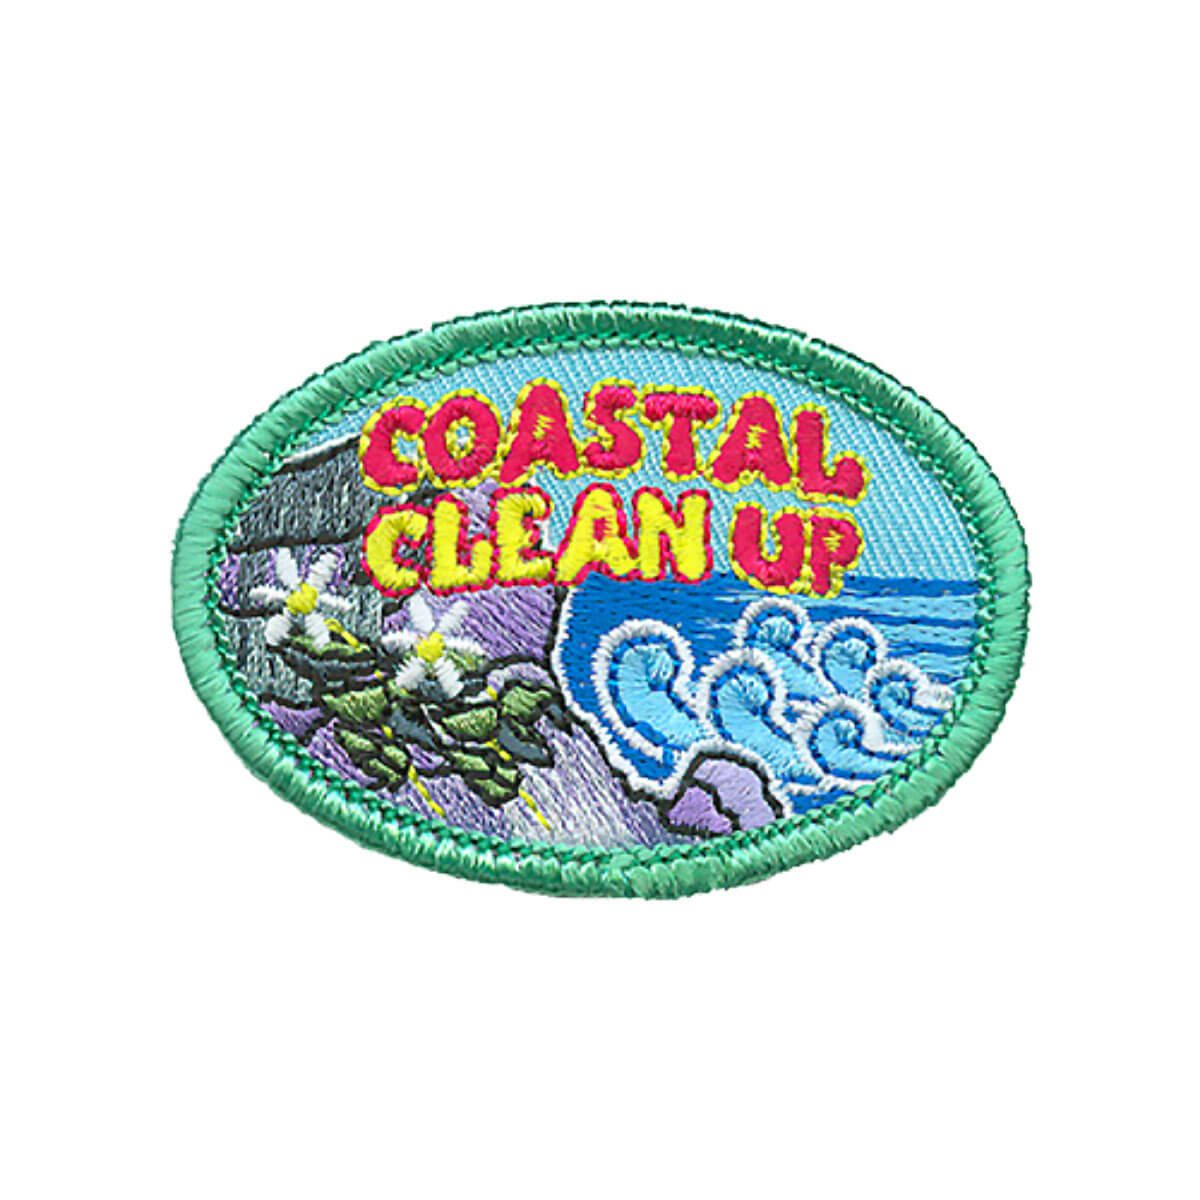 Coastal Clean Up - W 